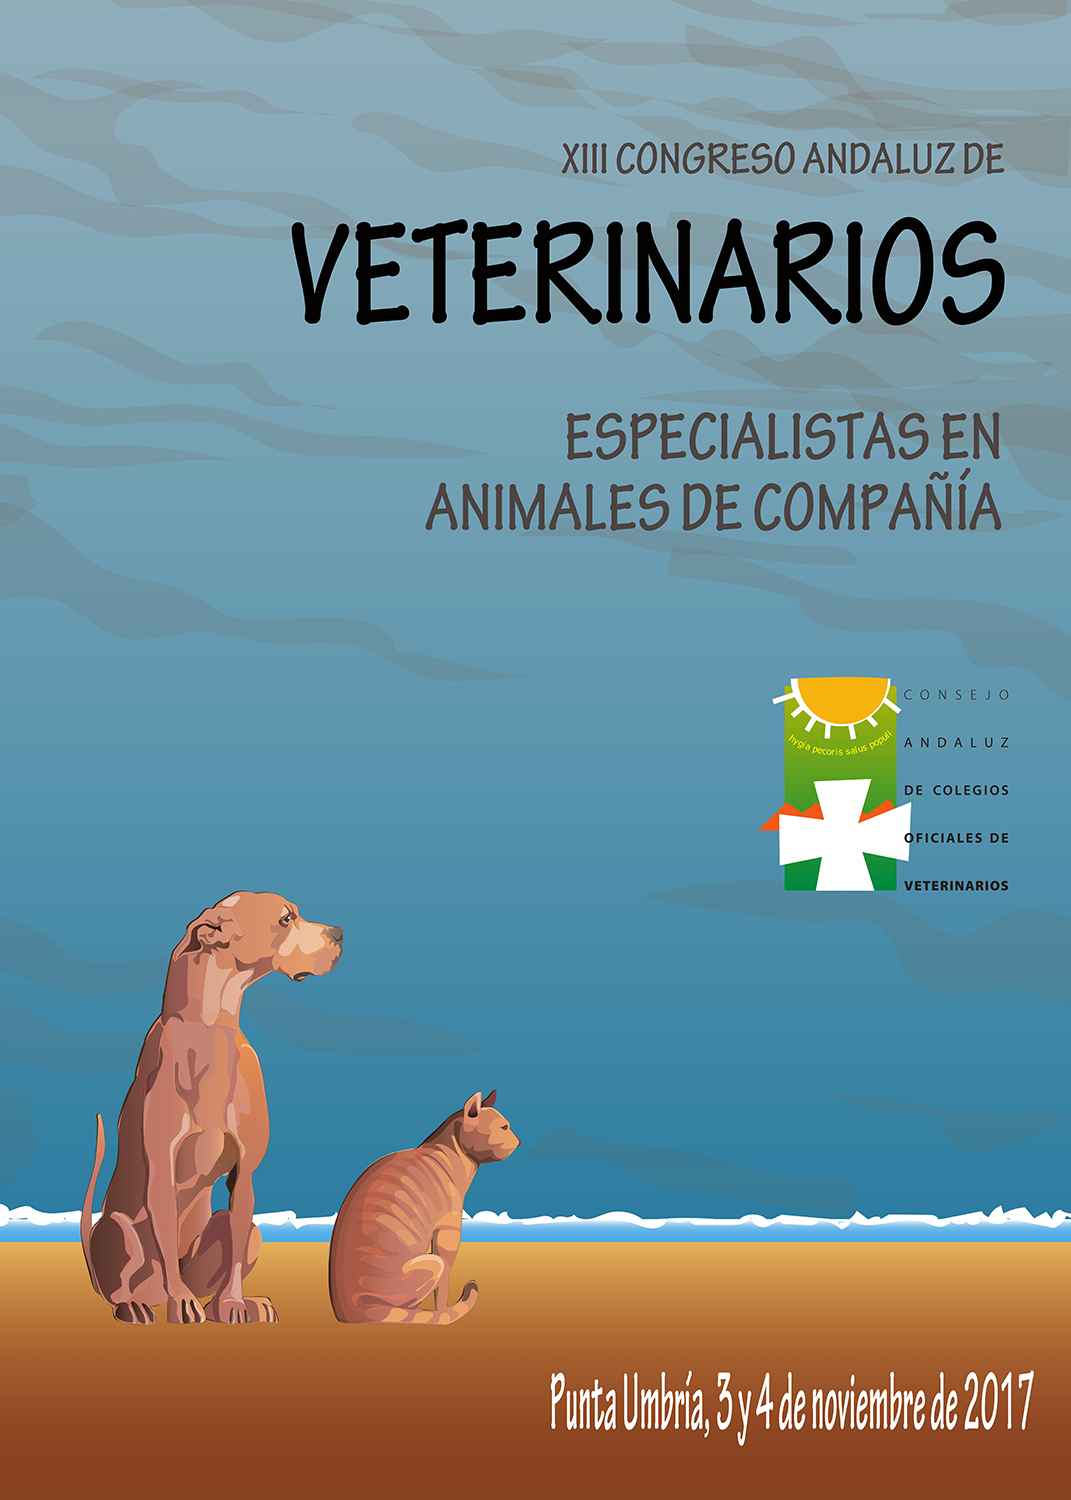 XIII Congreso Andaluz de Veterinarios "Especialistas en Animales de Compañía"